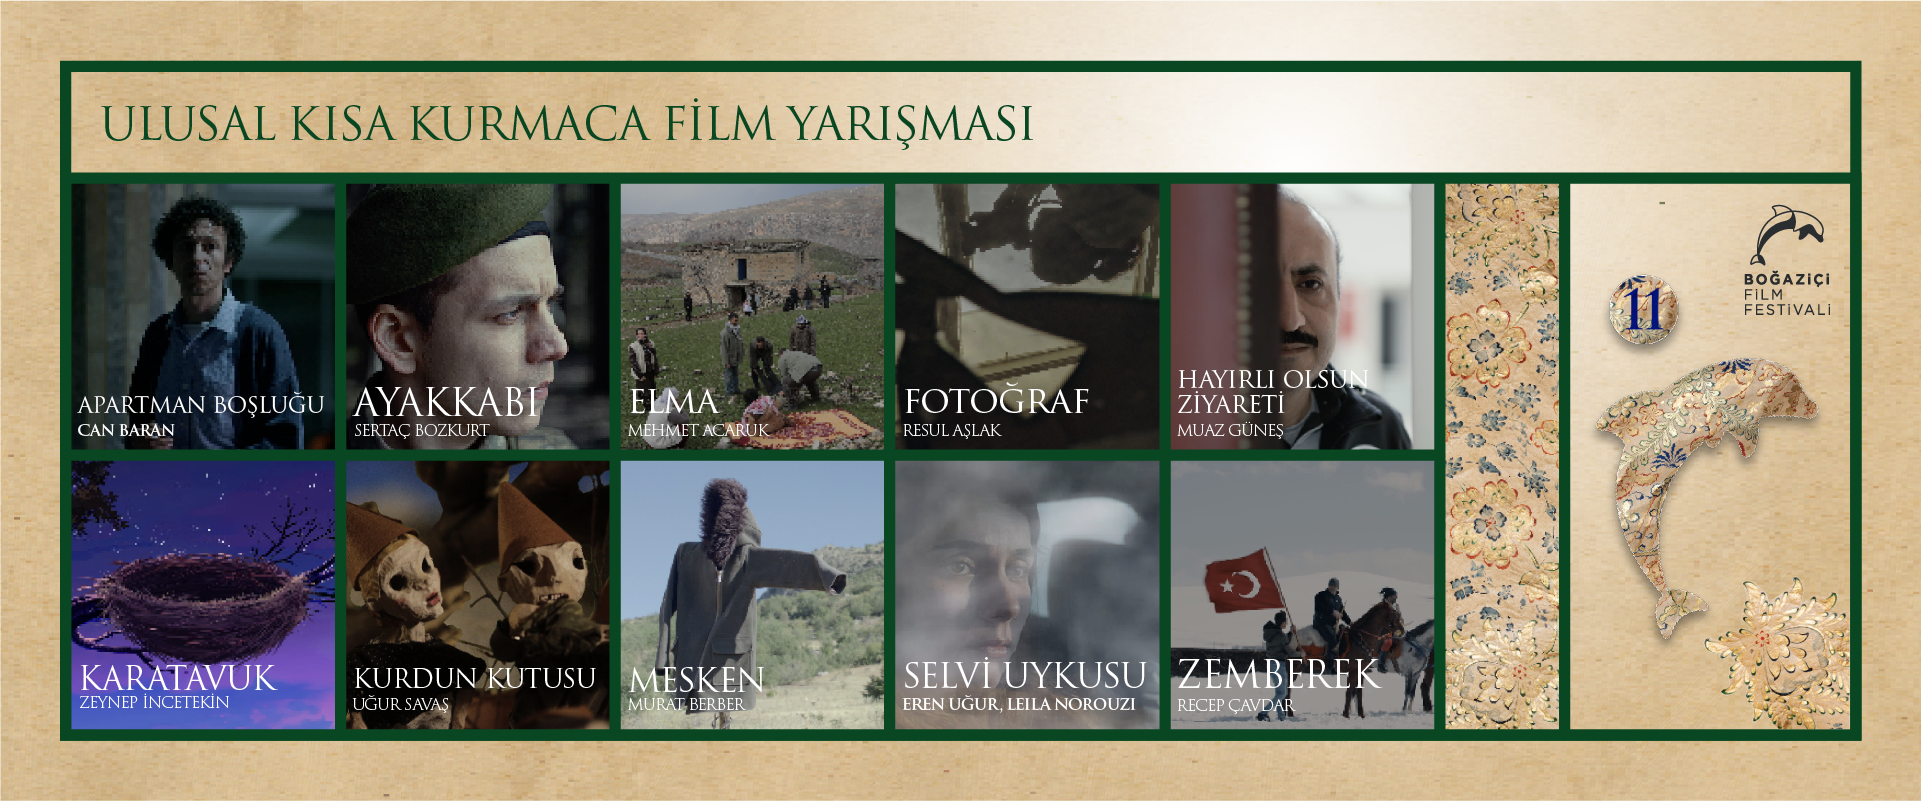 11. Boğaziçi Film Festivali Bu Yıl da Kısa Film ve Belgesel Yarışmalarında İddialı!